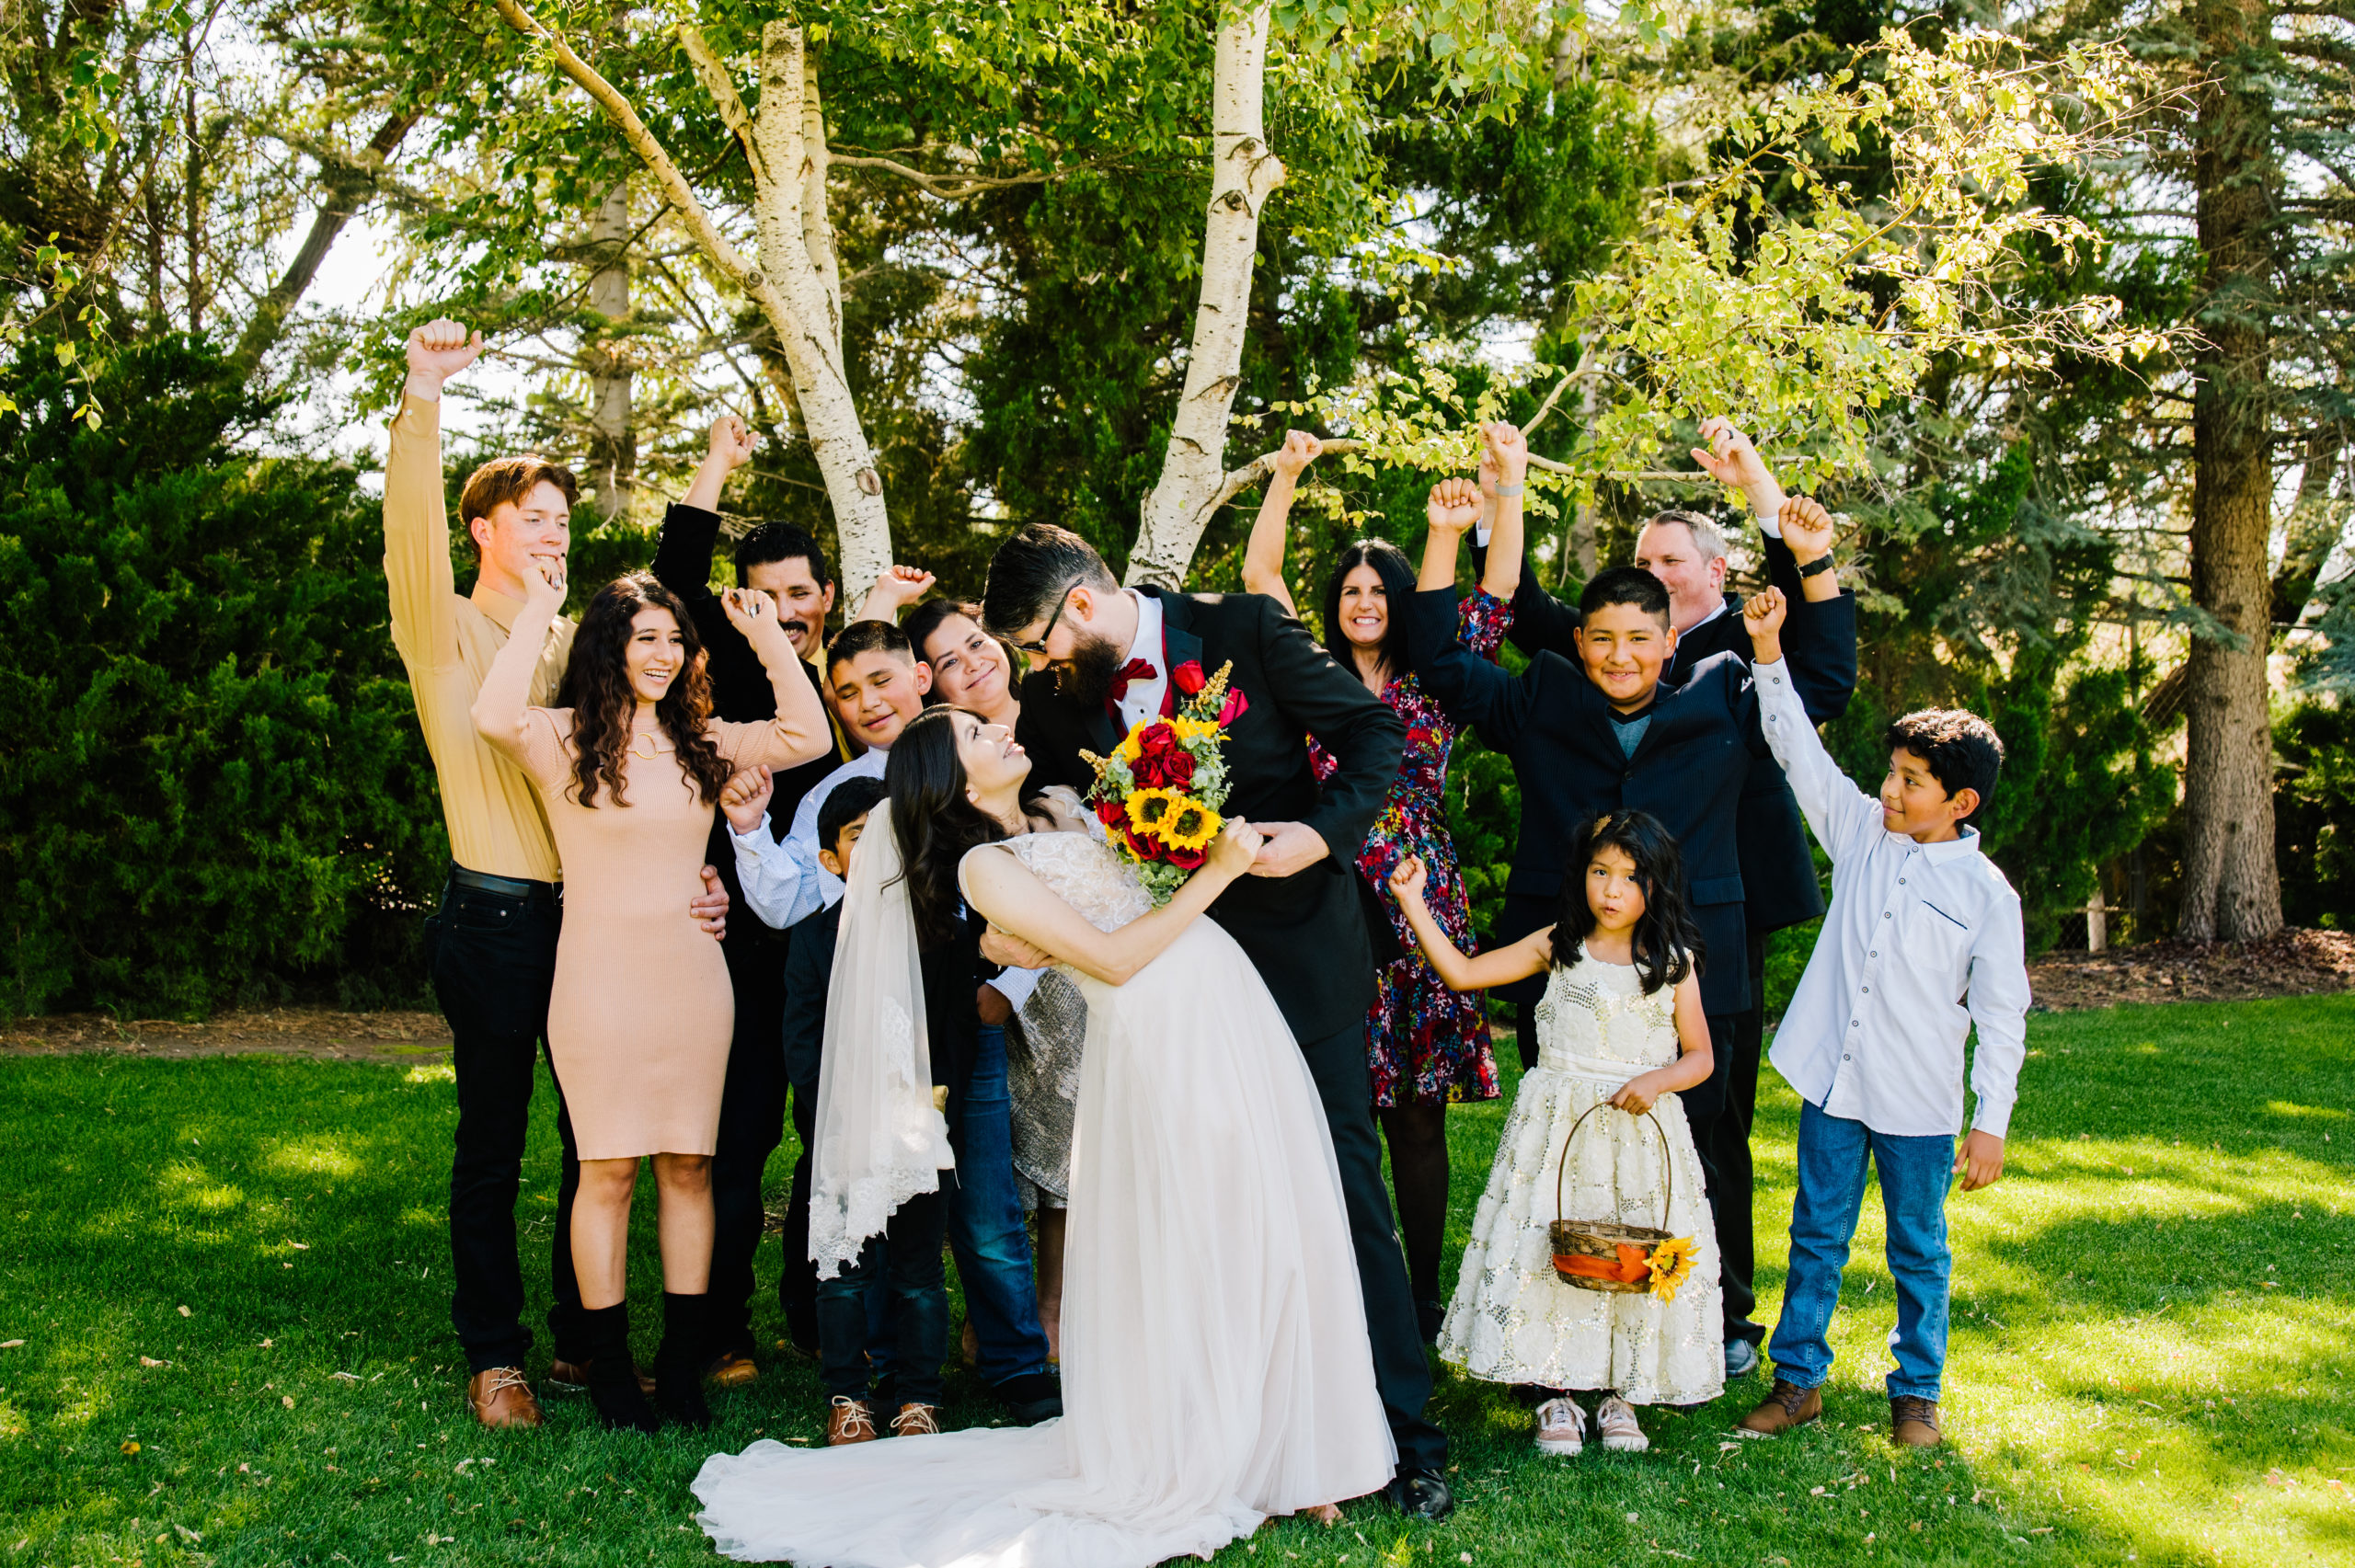 Jackson Hole wedding photographer captures backyard idaho wedding with couple celebrating